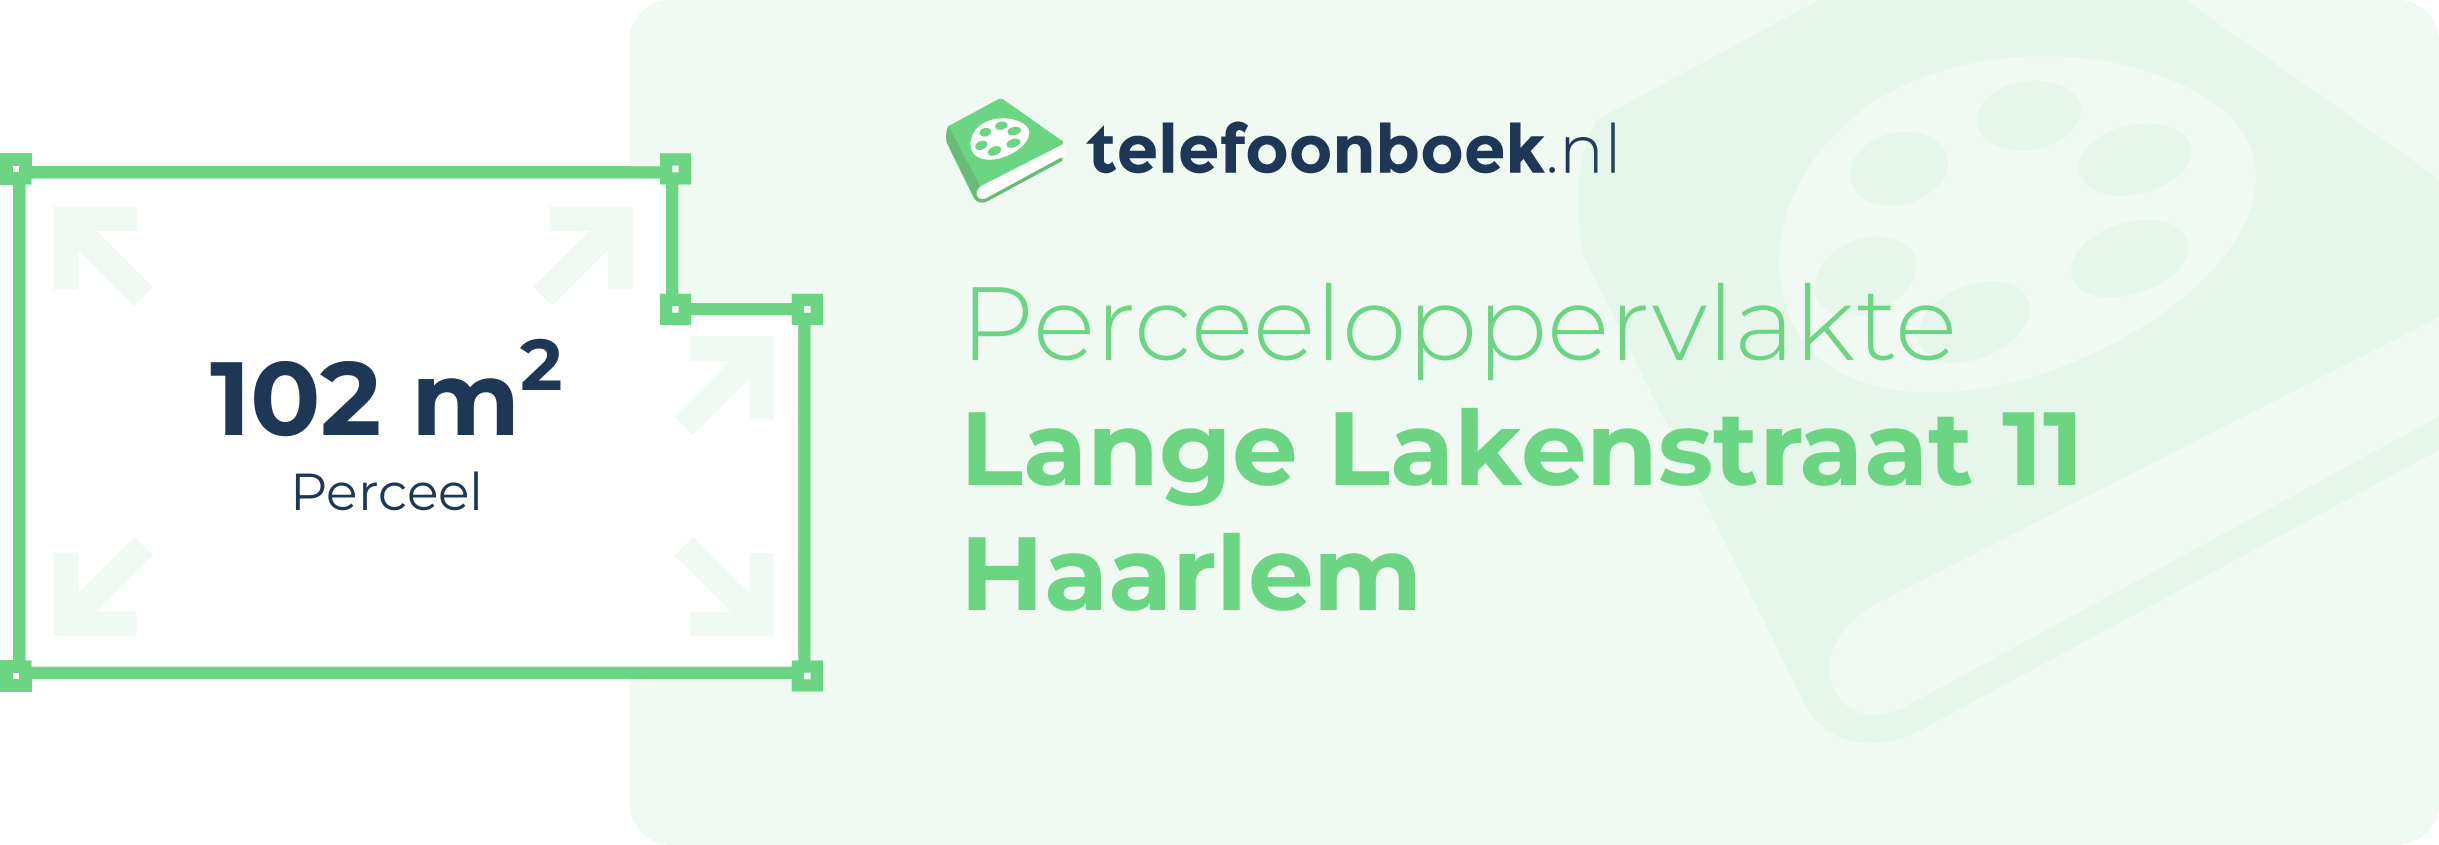 Perceeloppervlakte Lange Lakenstraat 11 Haarlem